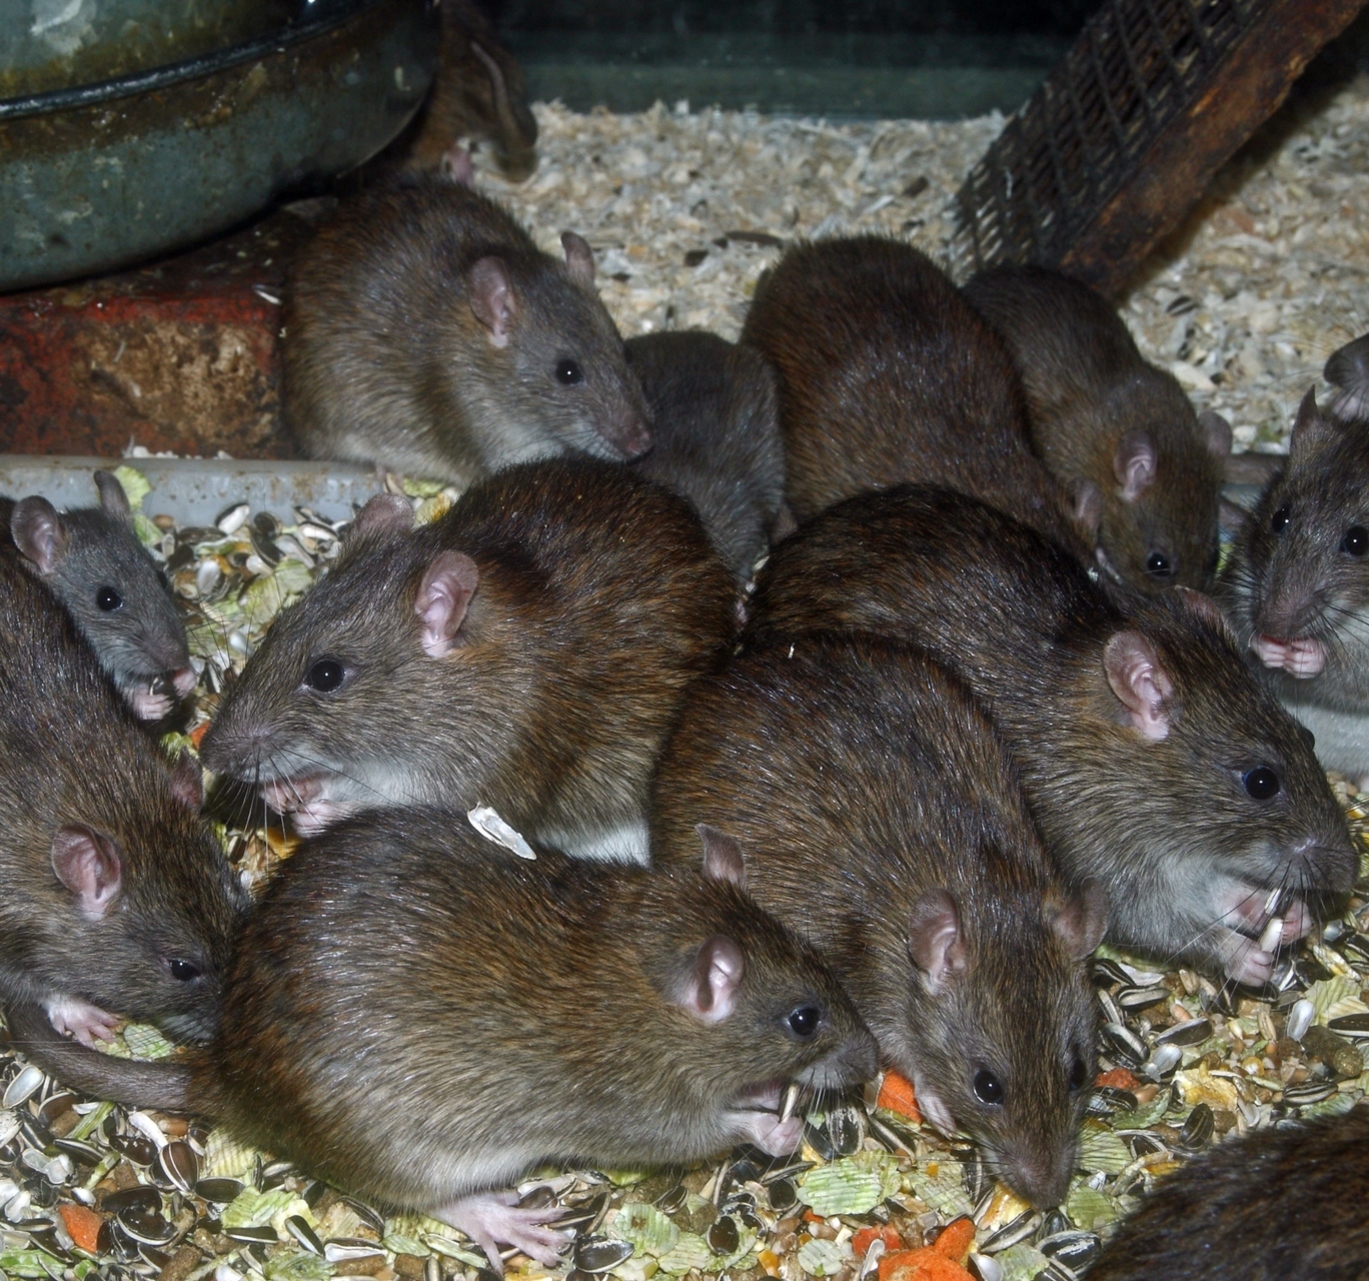 Lots of rats